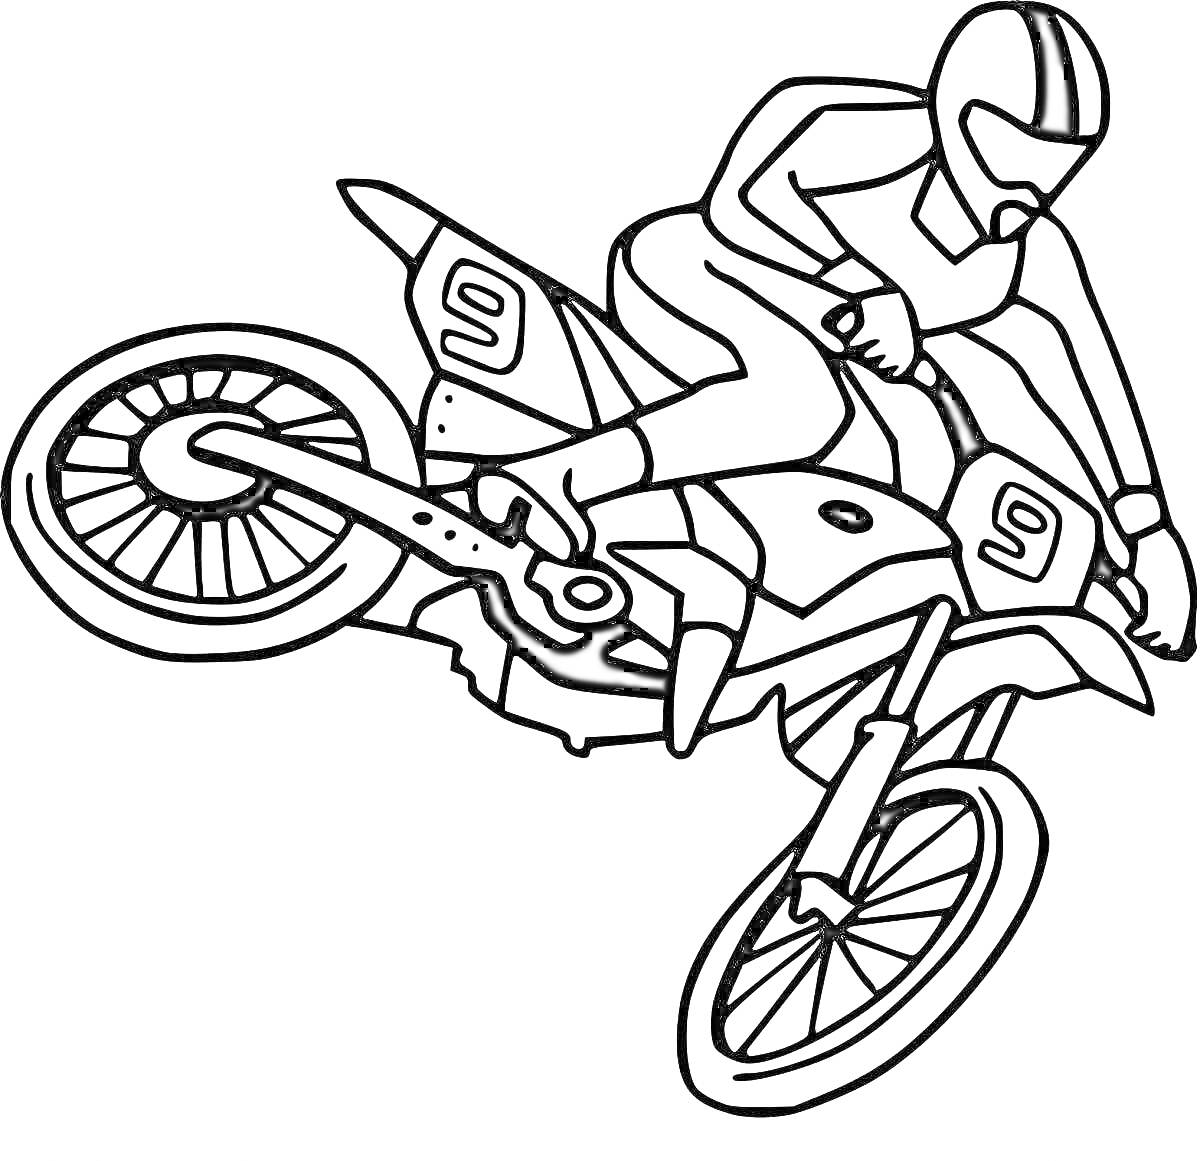 Раскраска Мотокросс-гонщик на мотоцикле с номером 9 в прыжке